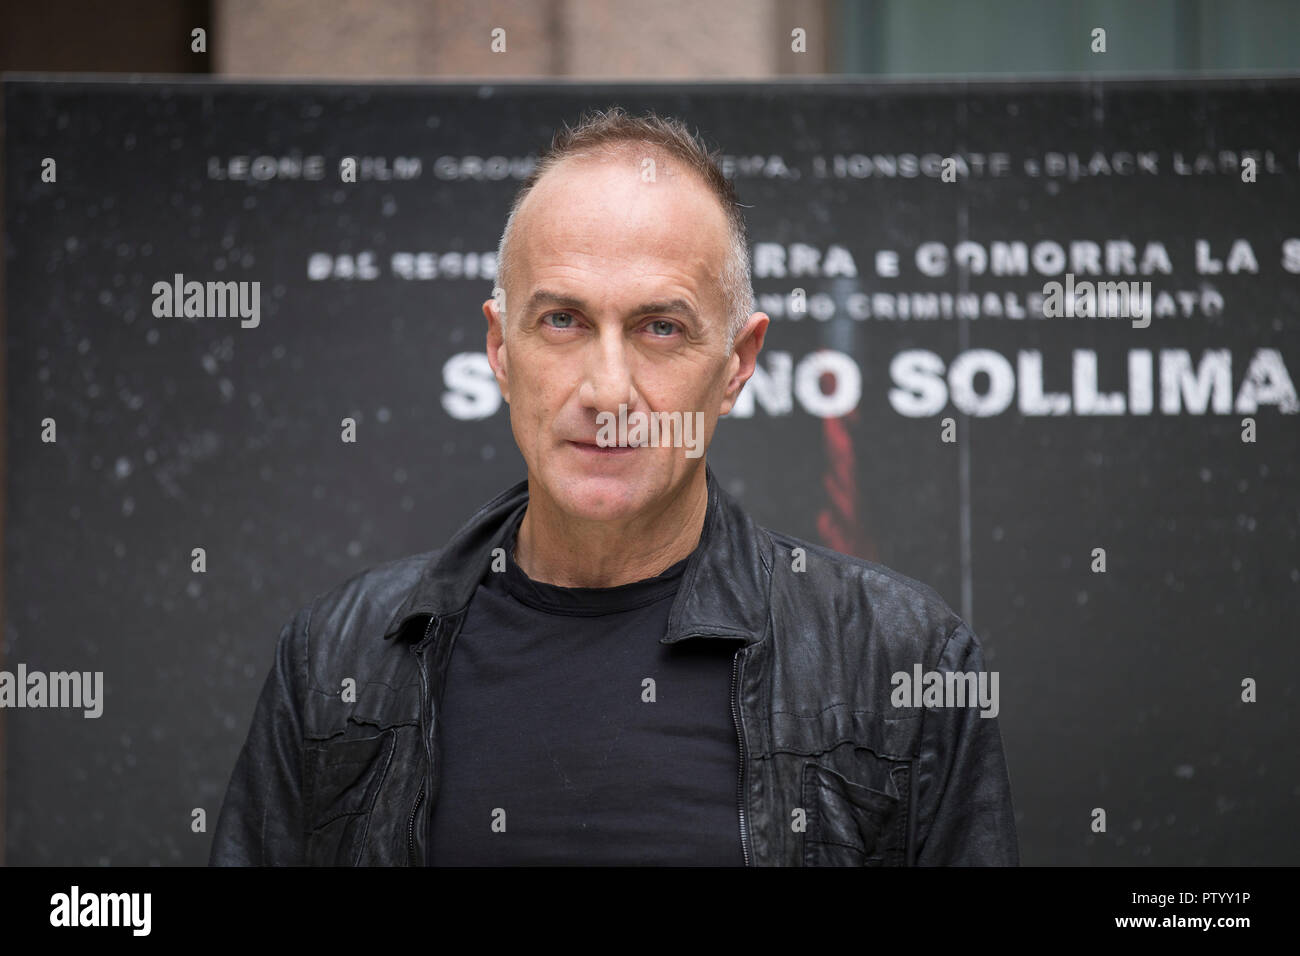 Regisseur Stefano sollima dargestellt während der fotoauftrag der italienischen Film Soldado Stockfoto